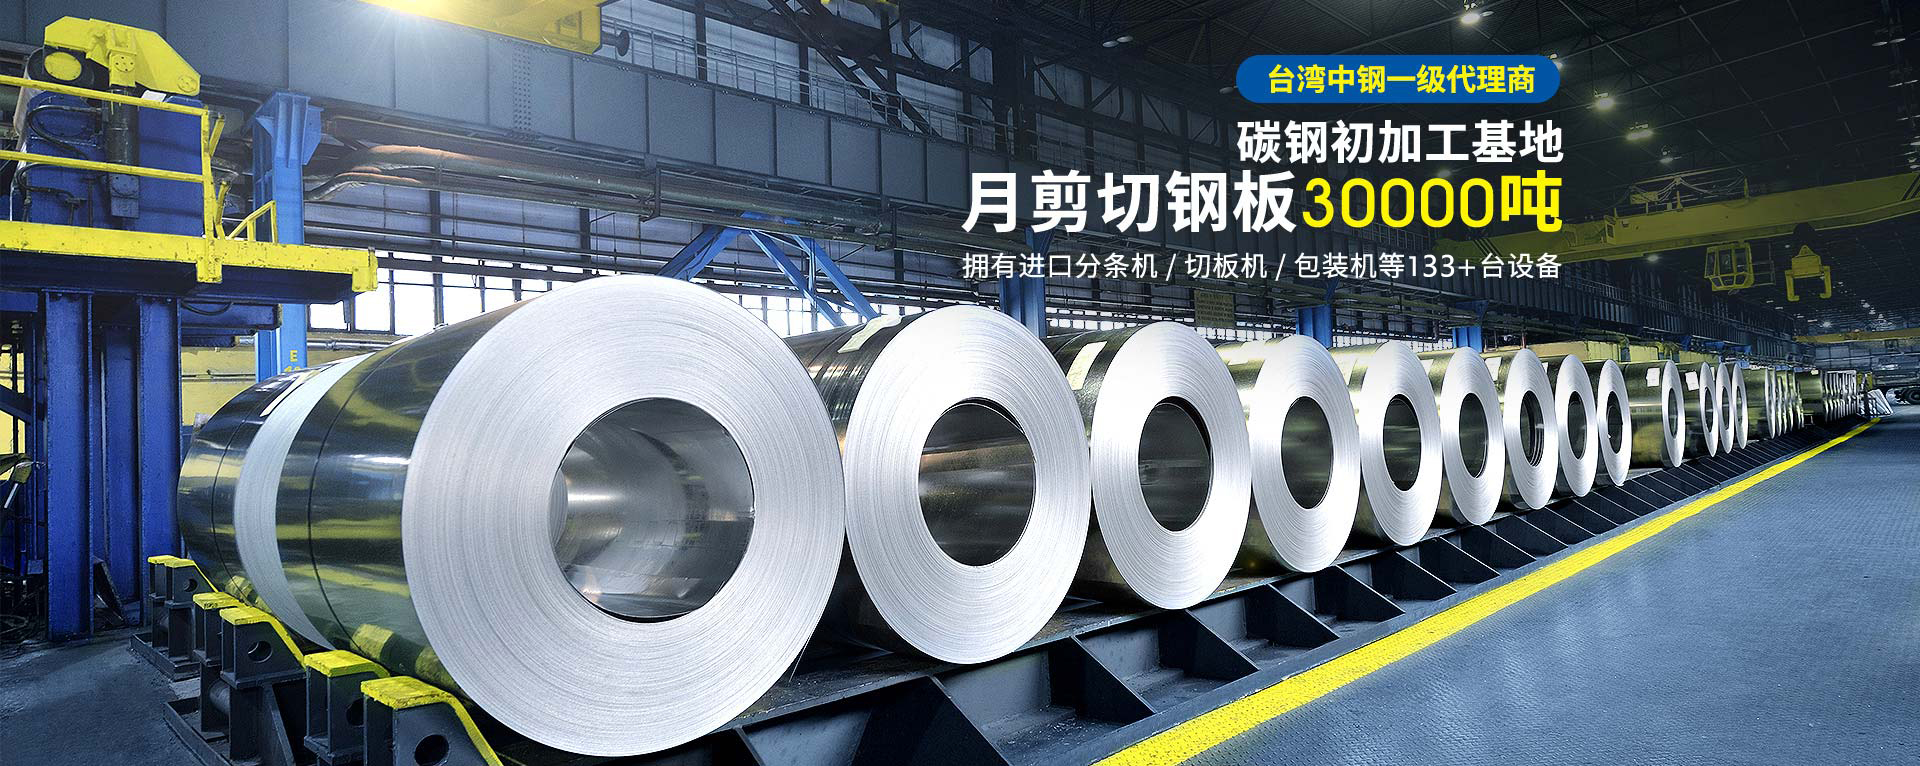 广州美亚-碳钢初加工基地